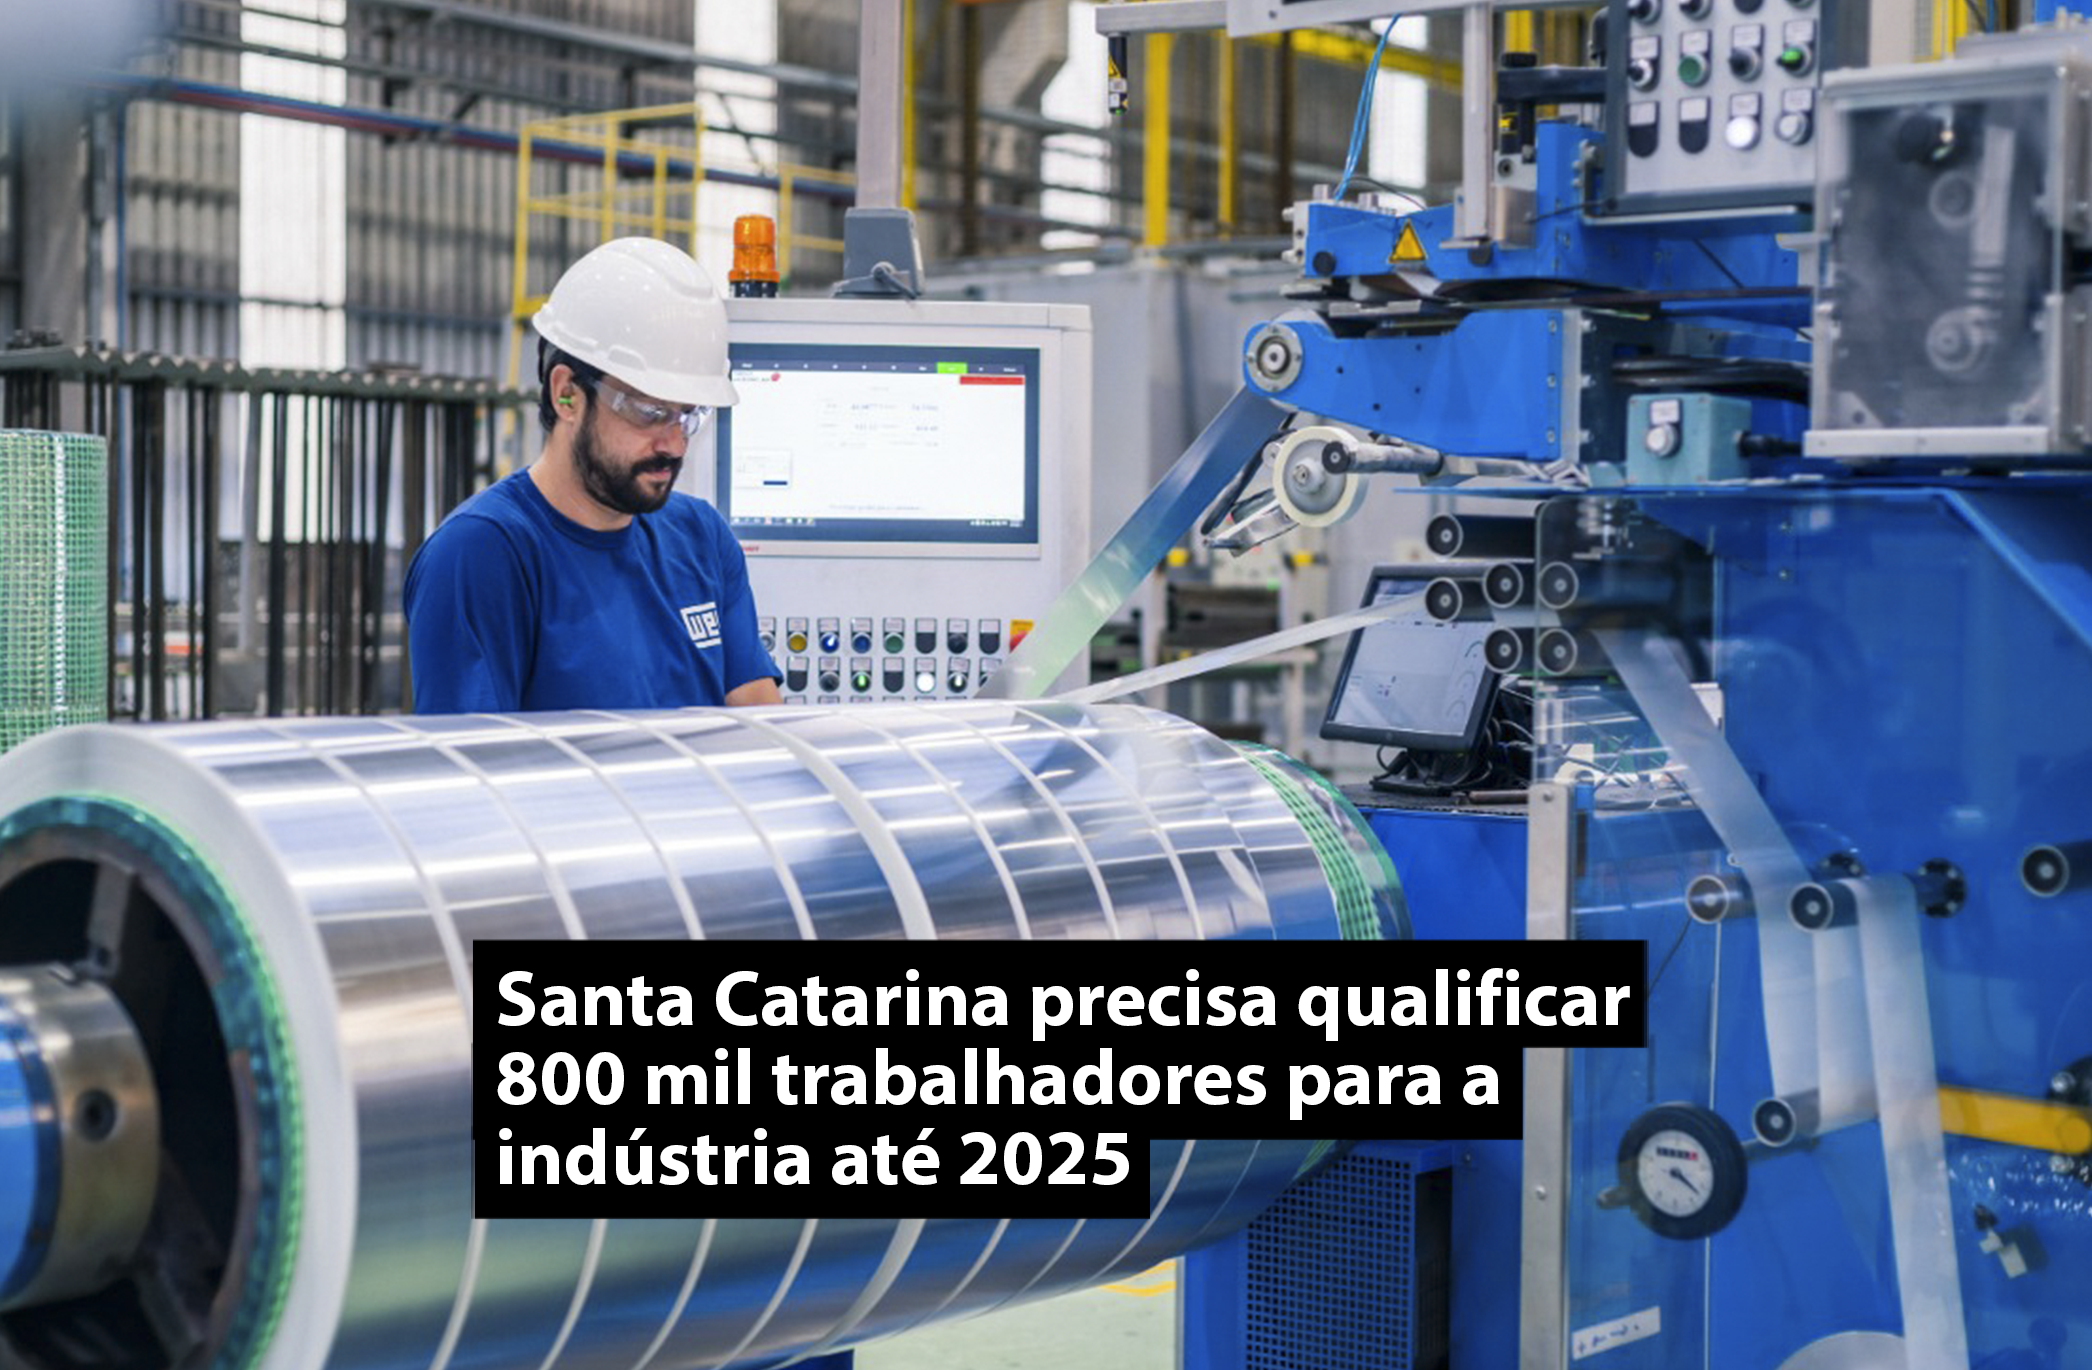 Santa Catarina precisa qualificar 800 mil trabalhadores para a indústria até 2025